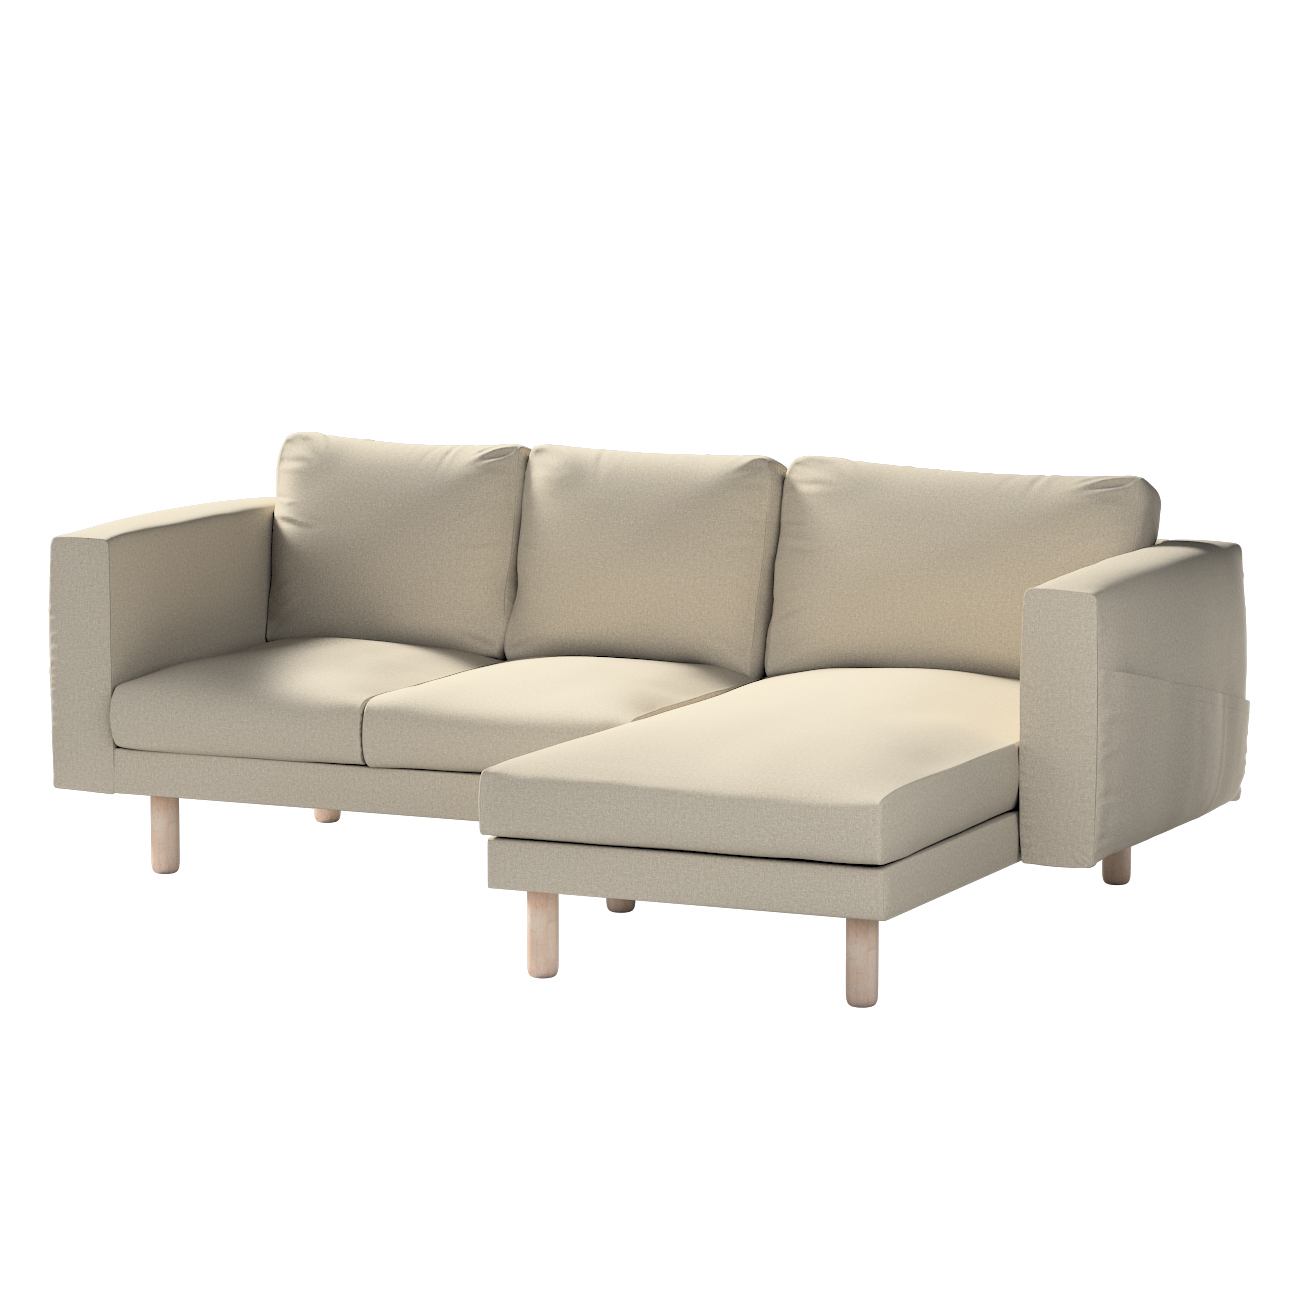 Bezug für Norsborg 3-Sitzer Sofa mit Recamiere, grau-beige, Norsborg Bezug günstig online kaufen